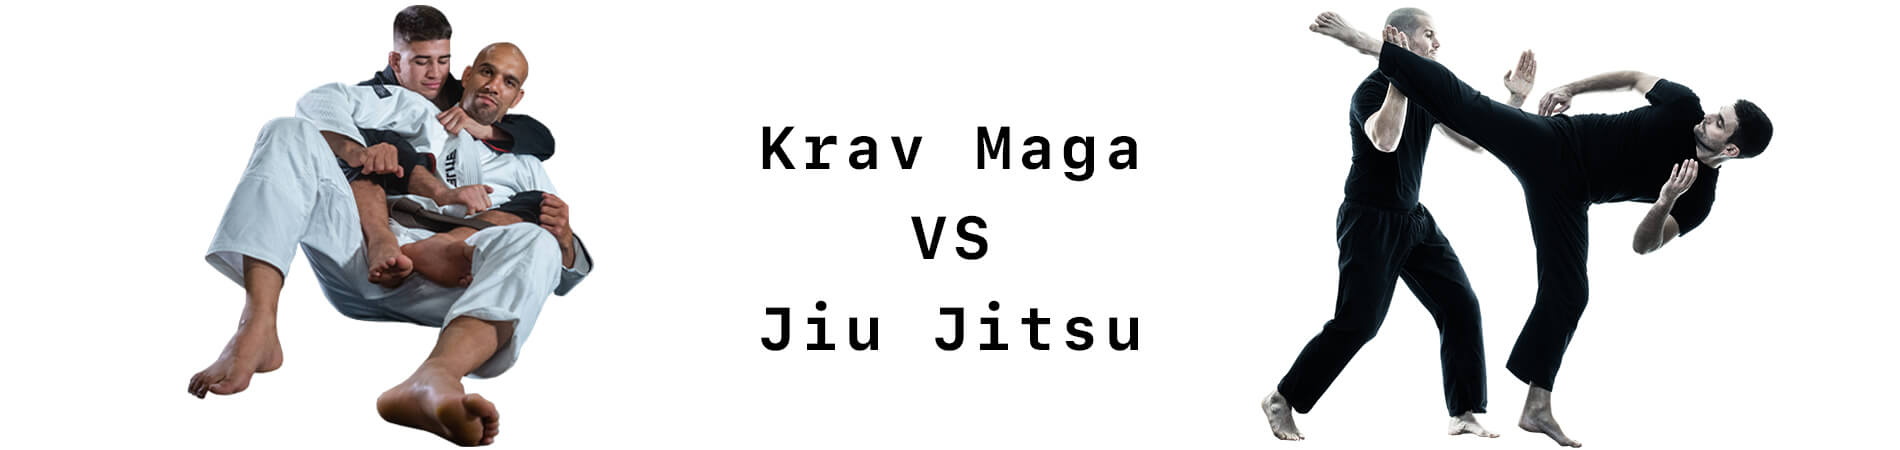 Krav Maga VS Jiu Jitsu